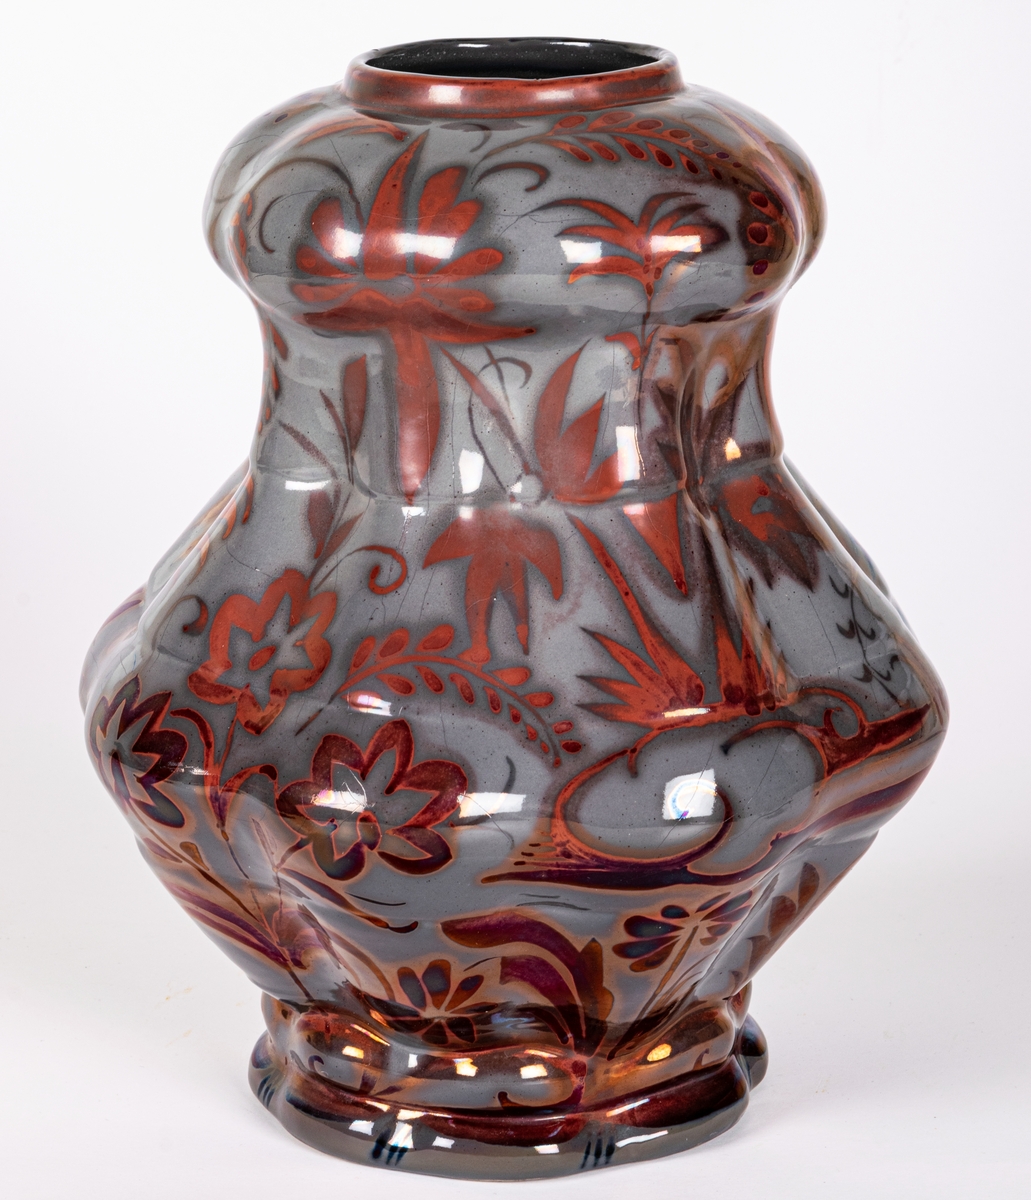 Lampfot, Bo Fajans, design Allan Ebeling. Fågeldekor, lysterglasyr i rödbrunt och gråblått.